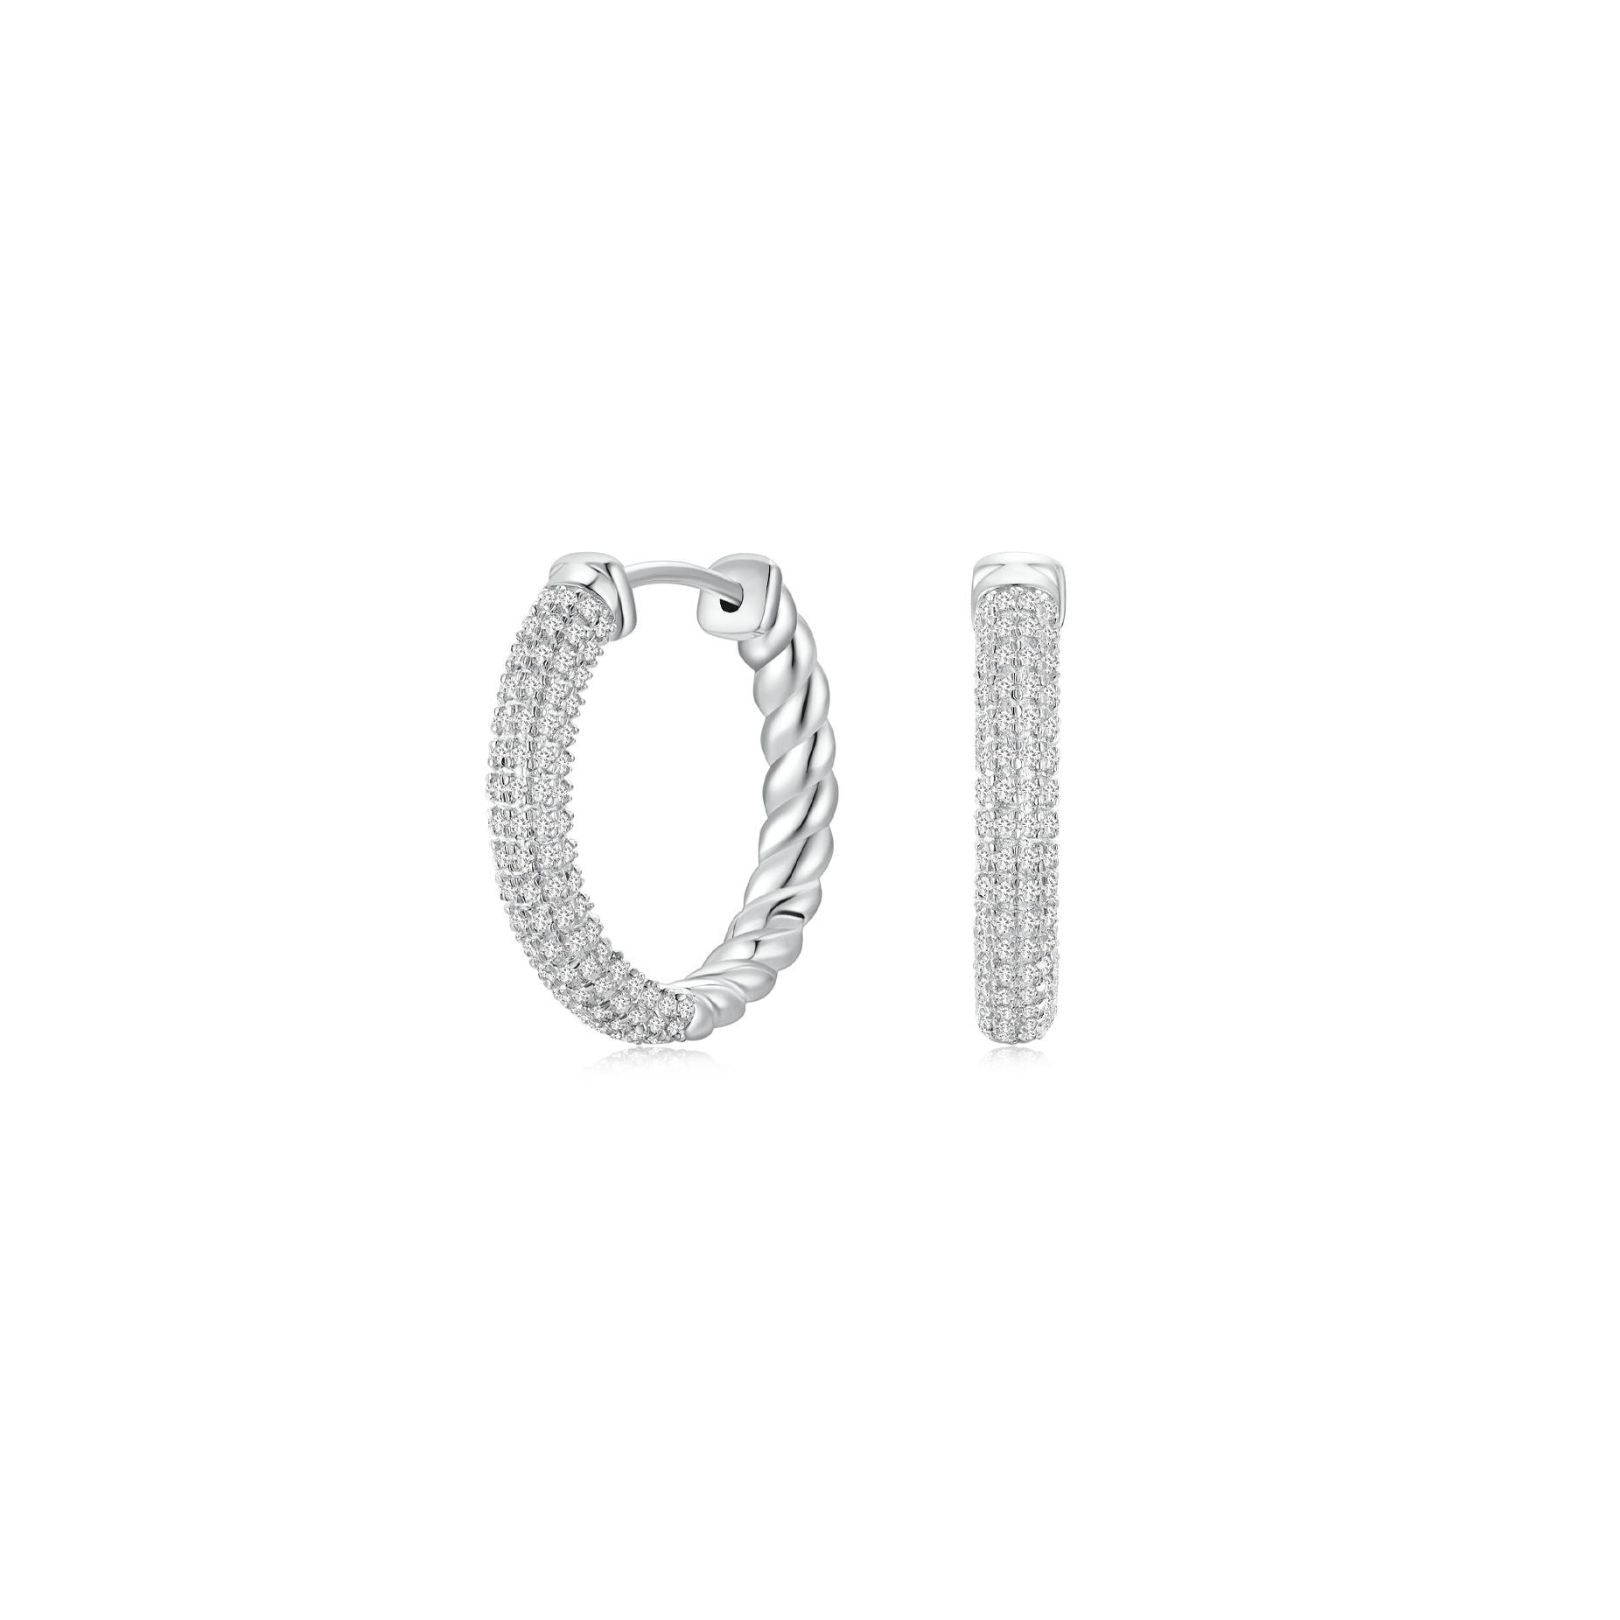 Braided Hooped Earrings 25mm WG (Both) - Eclat by Oui